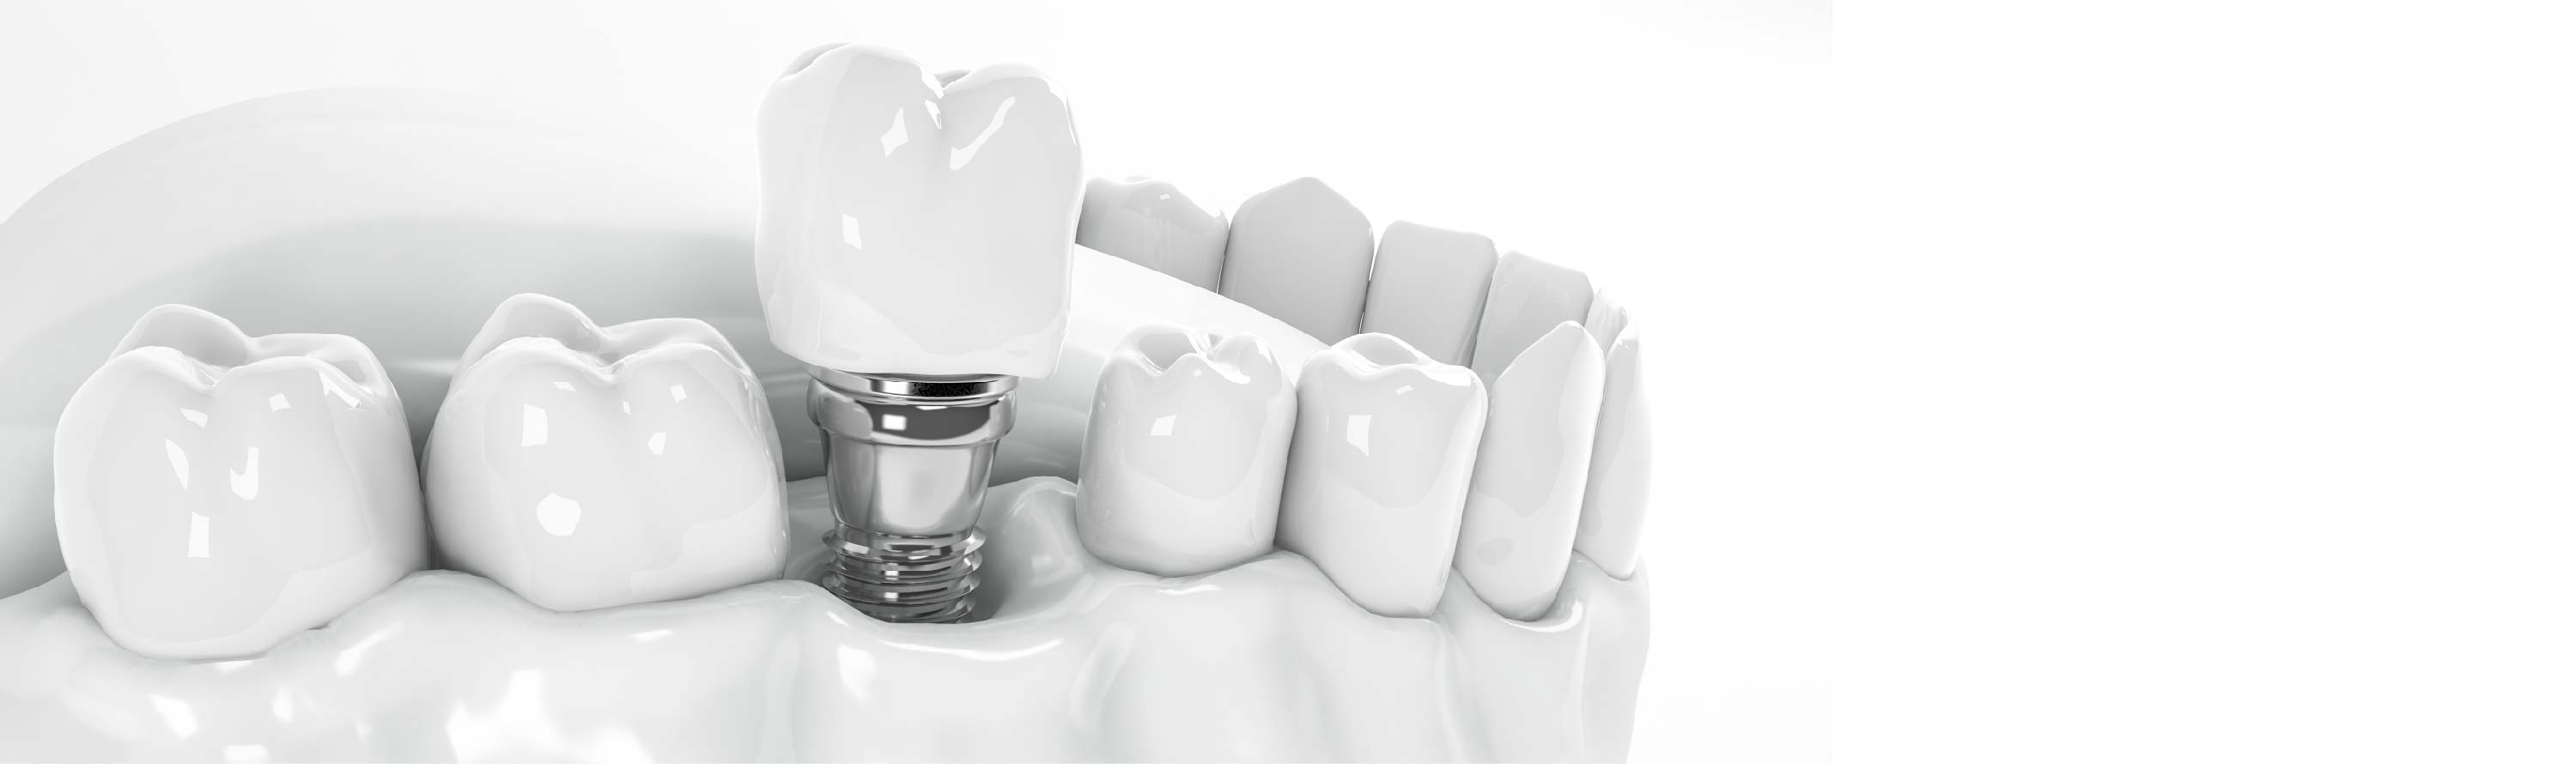 dental implants procedure step by step